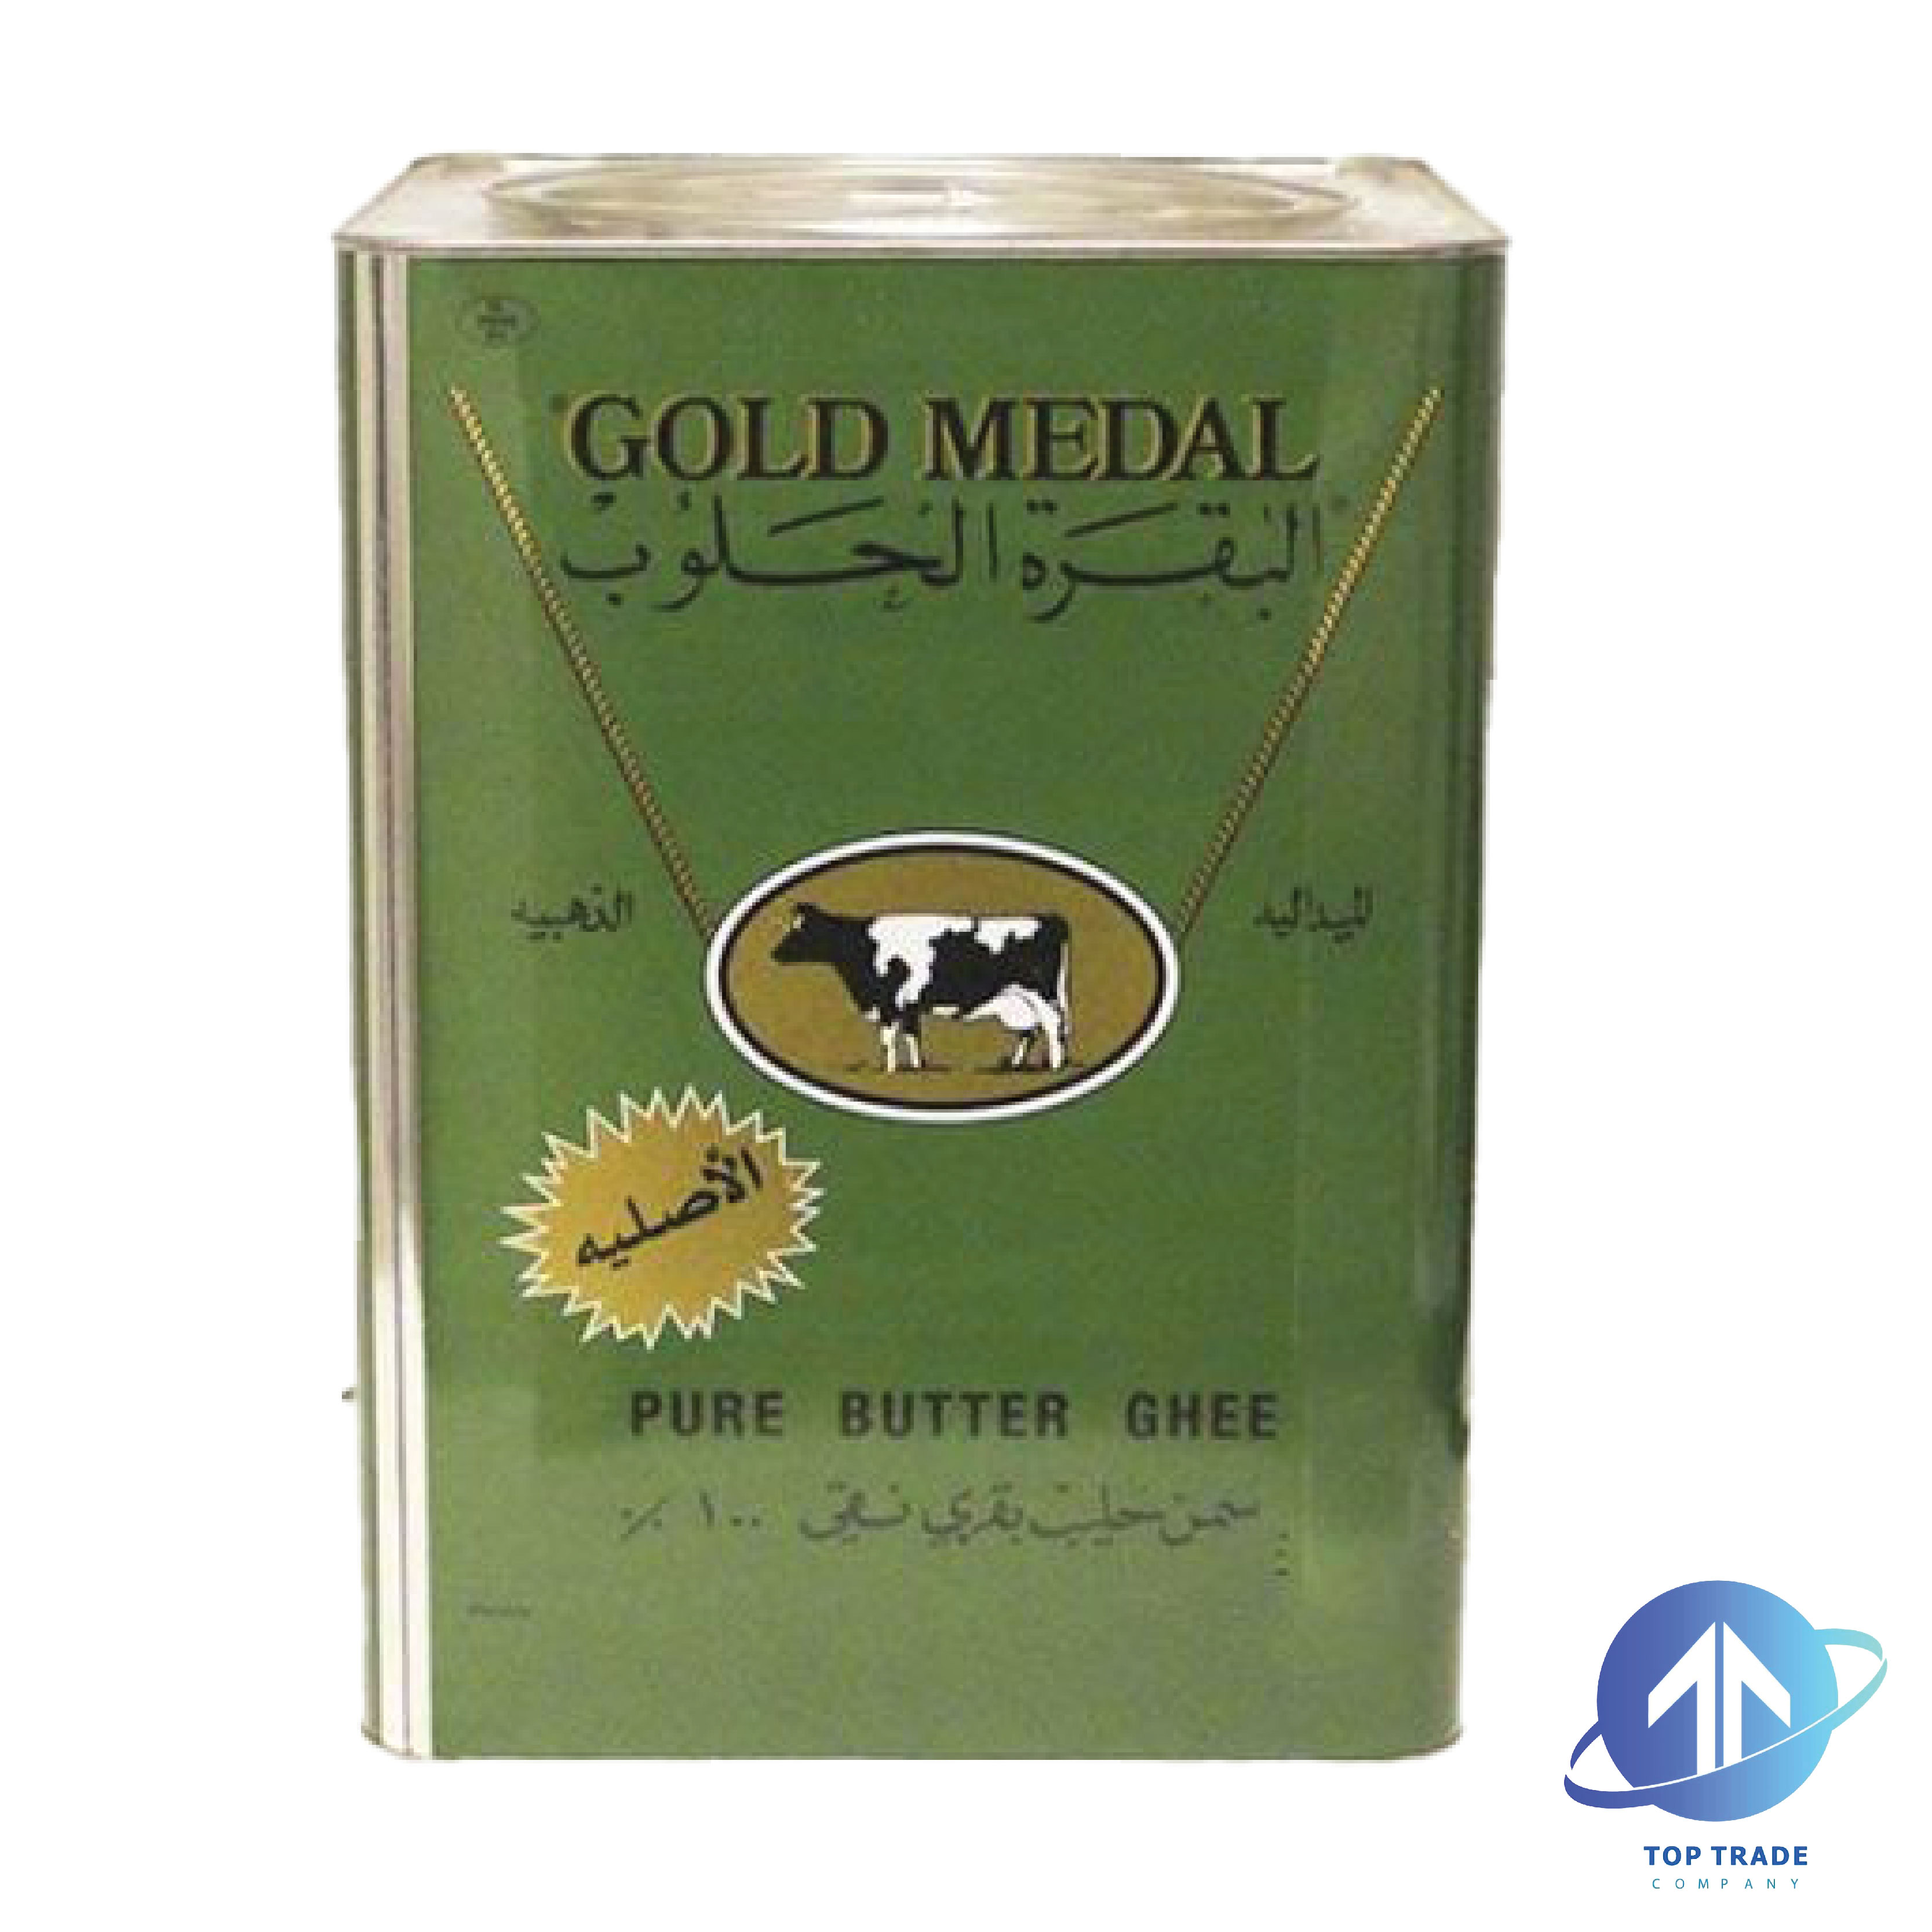 Gold Medal Butter ghee 15KG